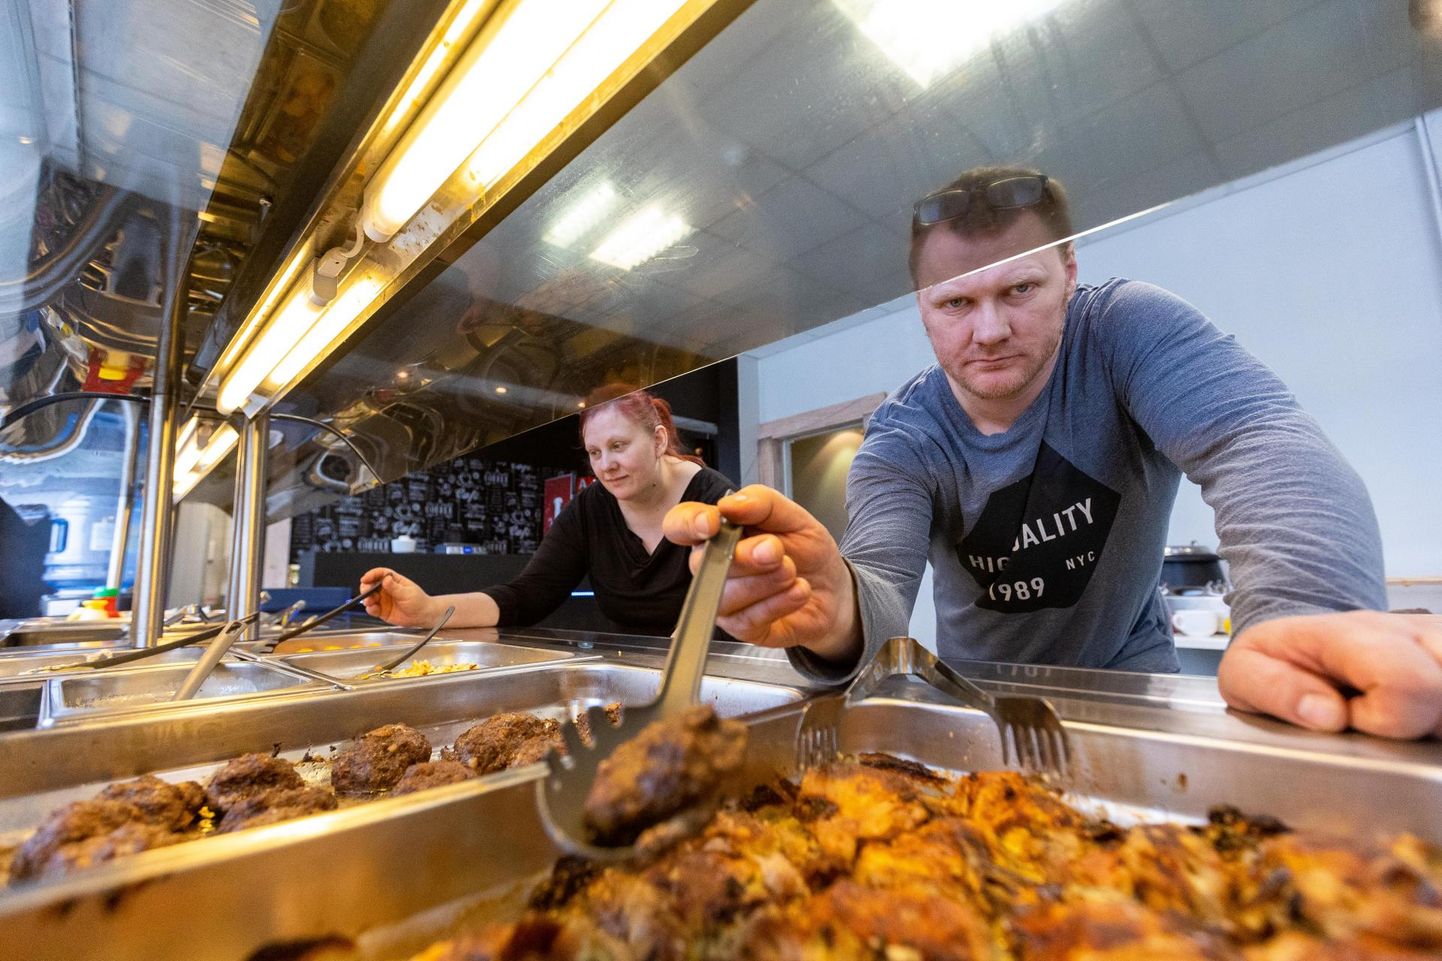 Soomest kodumaale naasnud Evelin Jürna ja Danel Puuder valmistavad iga päev kohvikus Verywell koduseid sööke, millest võib kõhu pilgeni täis süüa. Nüüd laienevad nad oma äriga Türile.